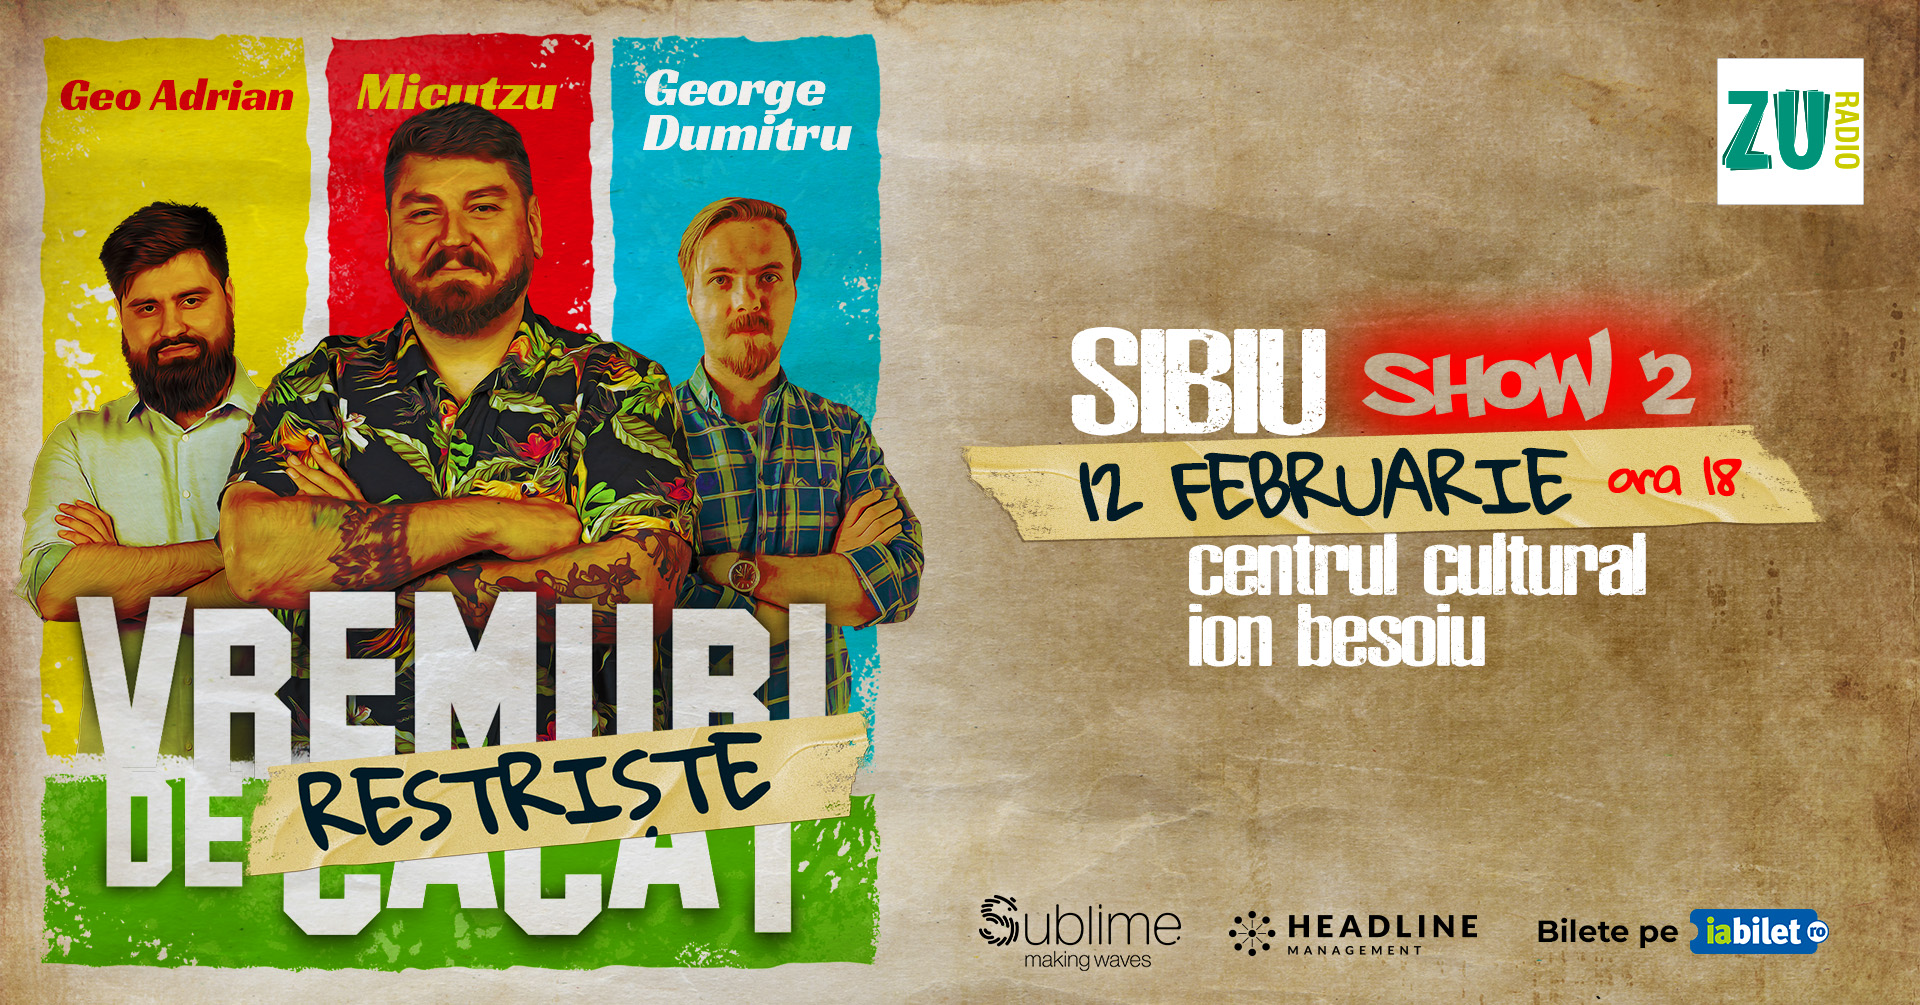 Stand-up Comedy cu Micutzu, Geo Adrian si George Dumitru - “Vremuri de Restriste” Sibiu, ora 18:00